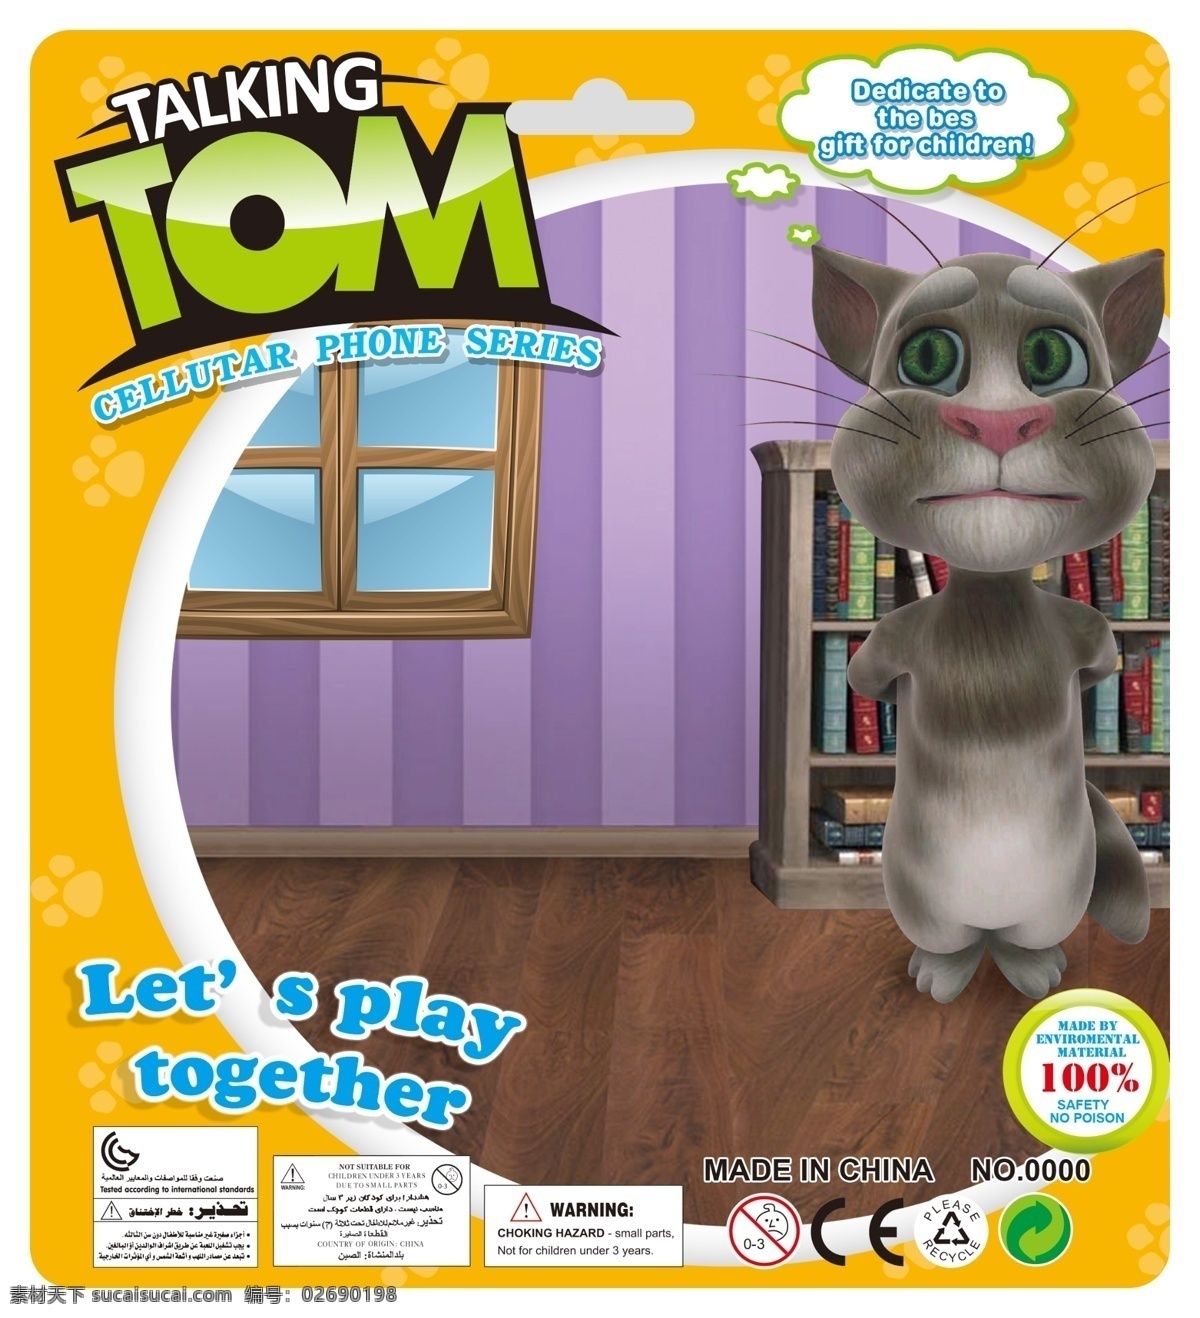 卡通 汤姆 猫 卡板 包装设计 广告设计模板 卡通背景 卡通人物 可爱 书架 卧室 汤姆猫 源文件 玩具 玩具卡板 原创设计 原创包装设计